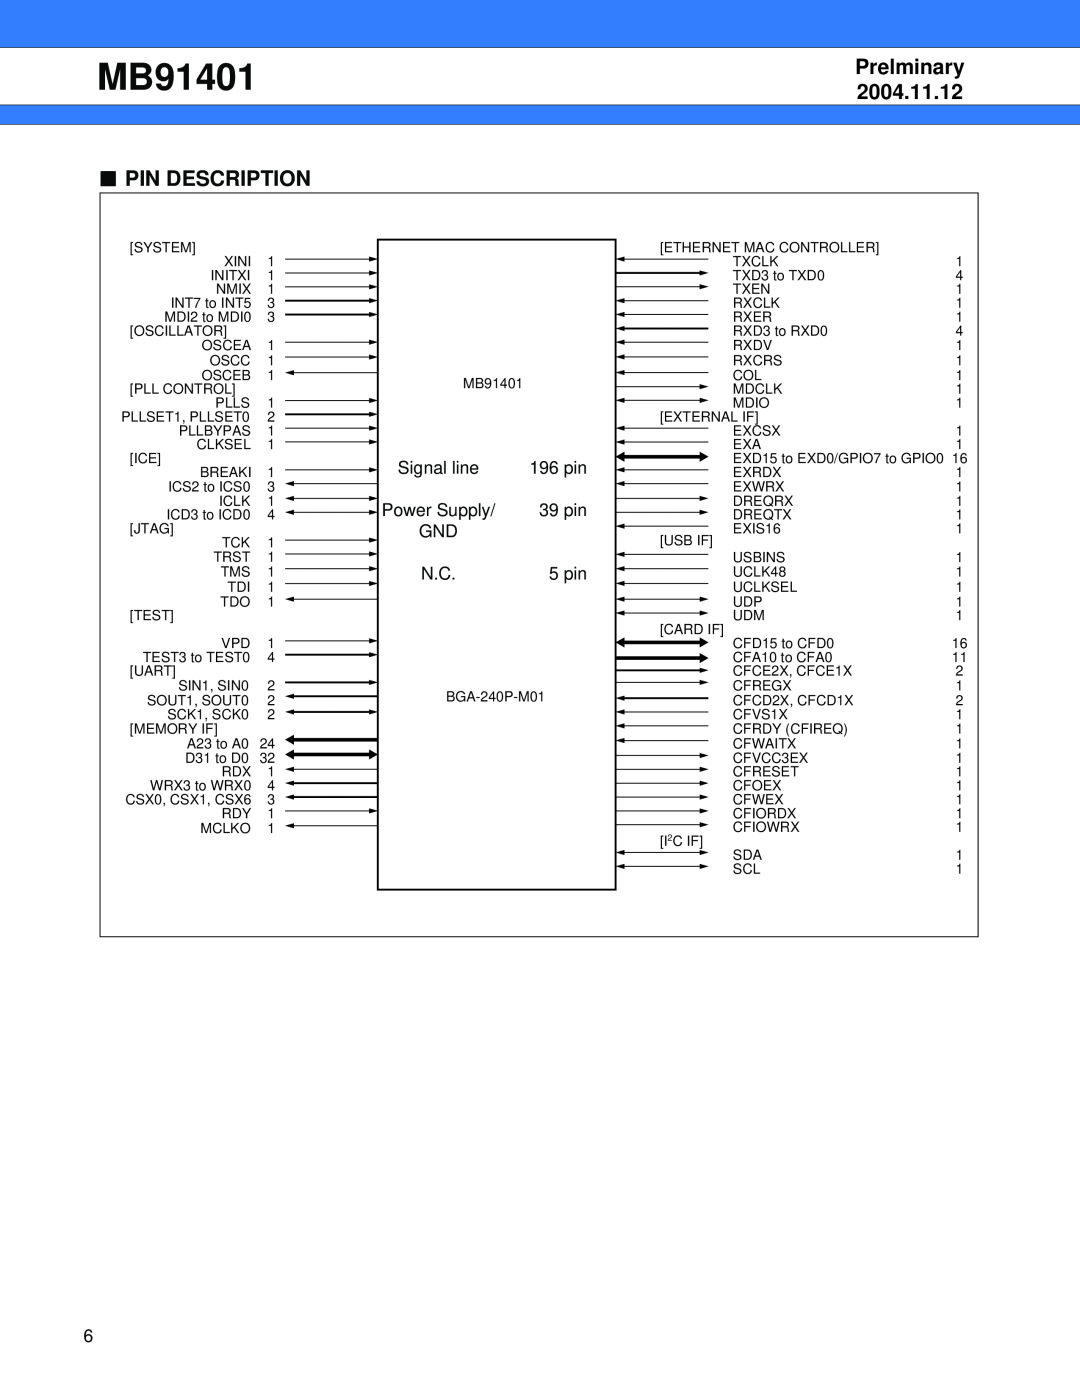 Fujitsu MB91401 manual Pin Description, Prelminary, 2004.11.12, Signal line, 196 pin, Power Supply, 39 pin, 5 pin 